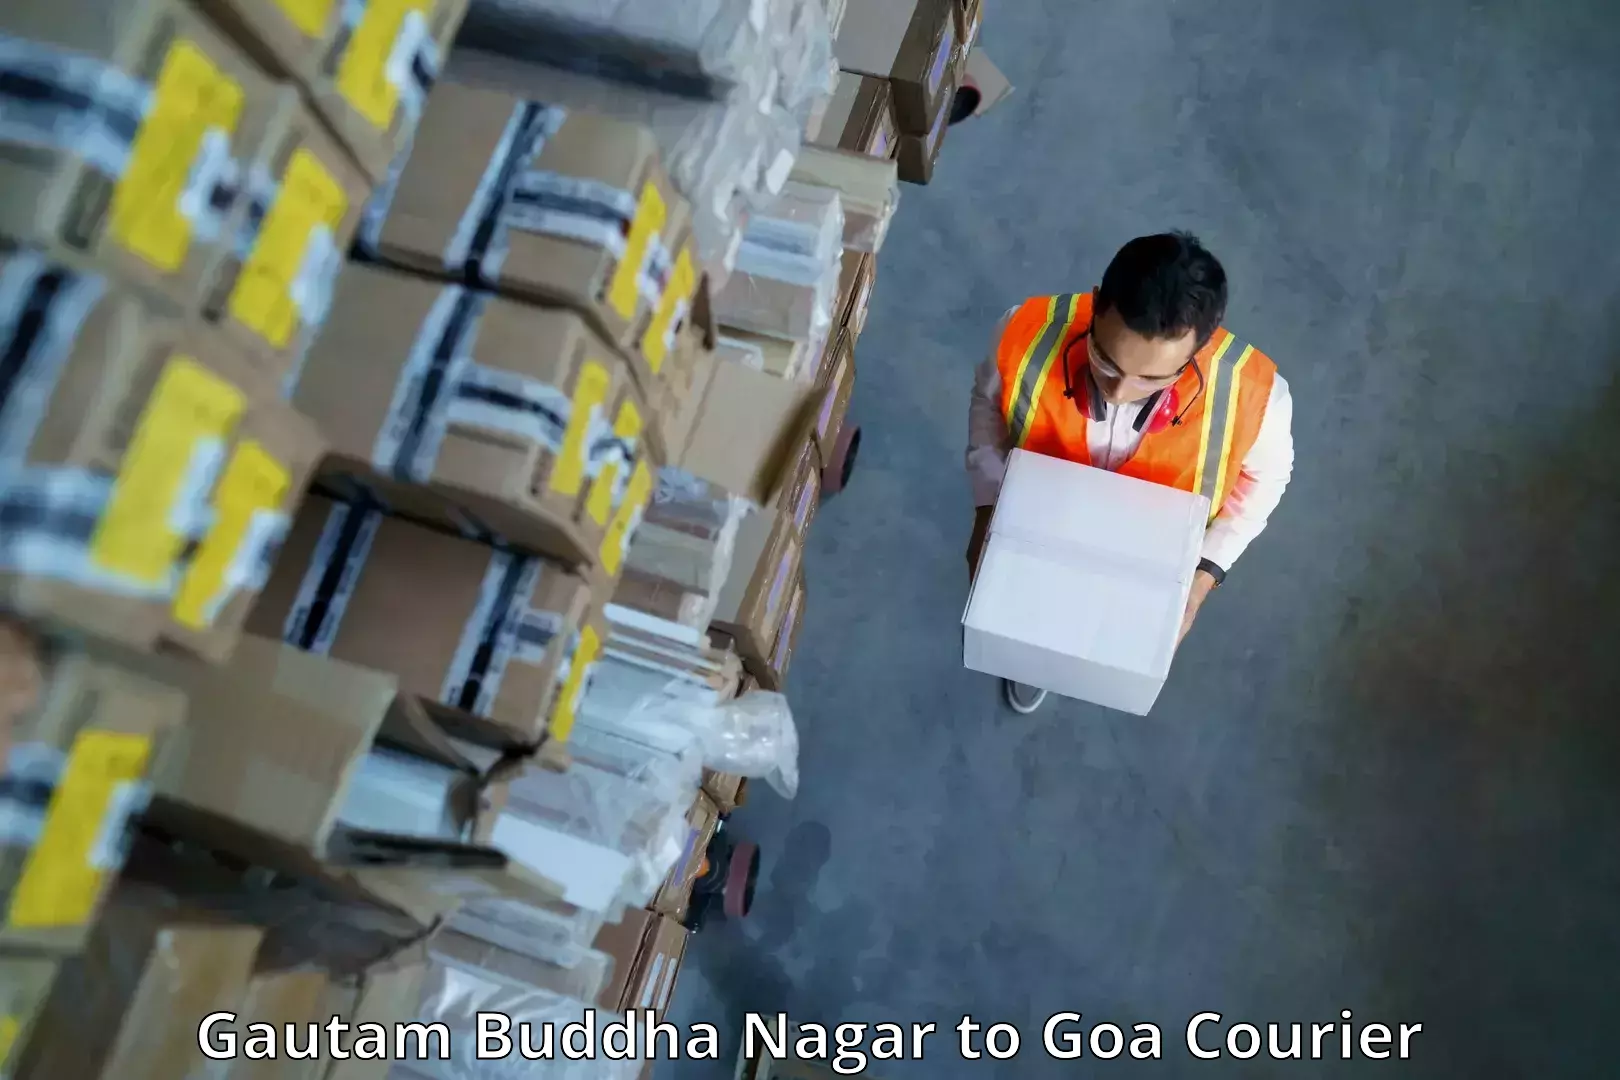 Personal courier services Gautam Buddha Nagar to Goa